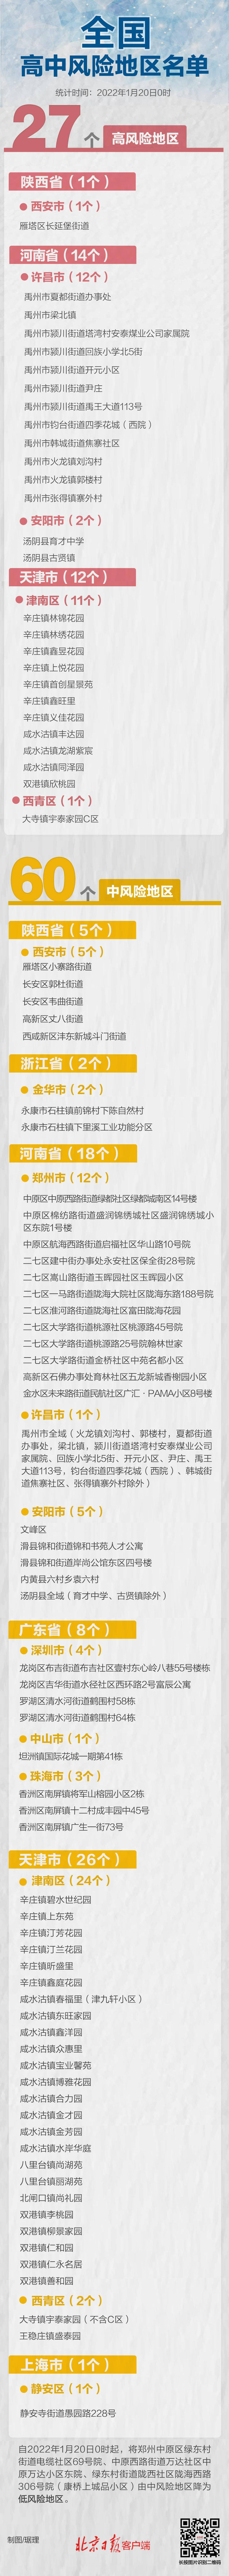 社区|午夜更新！郑州3地降级，全国现有高中风险区27+60个